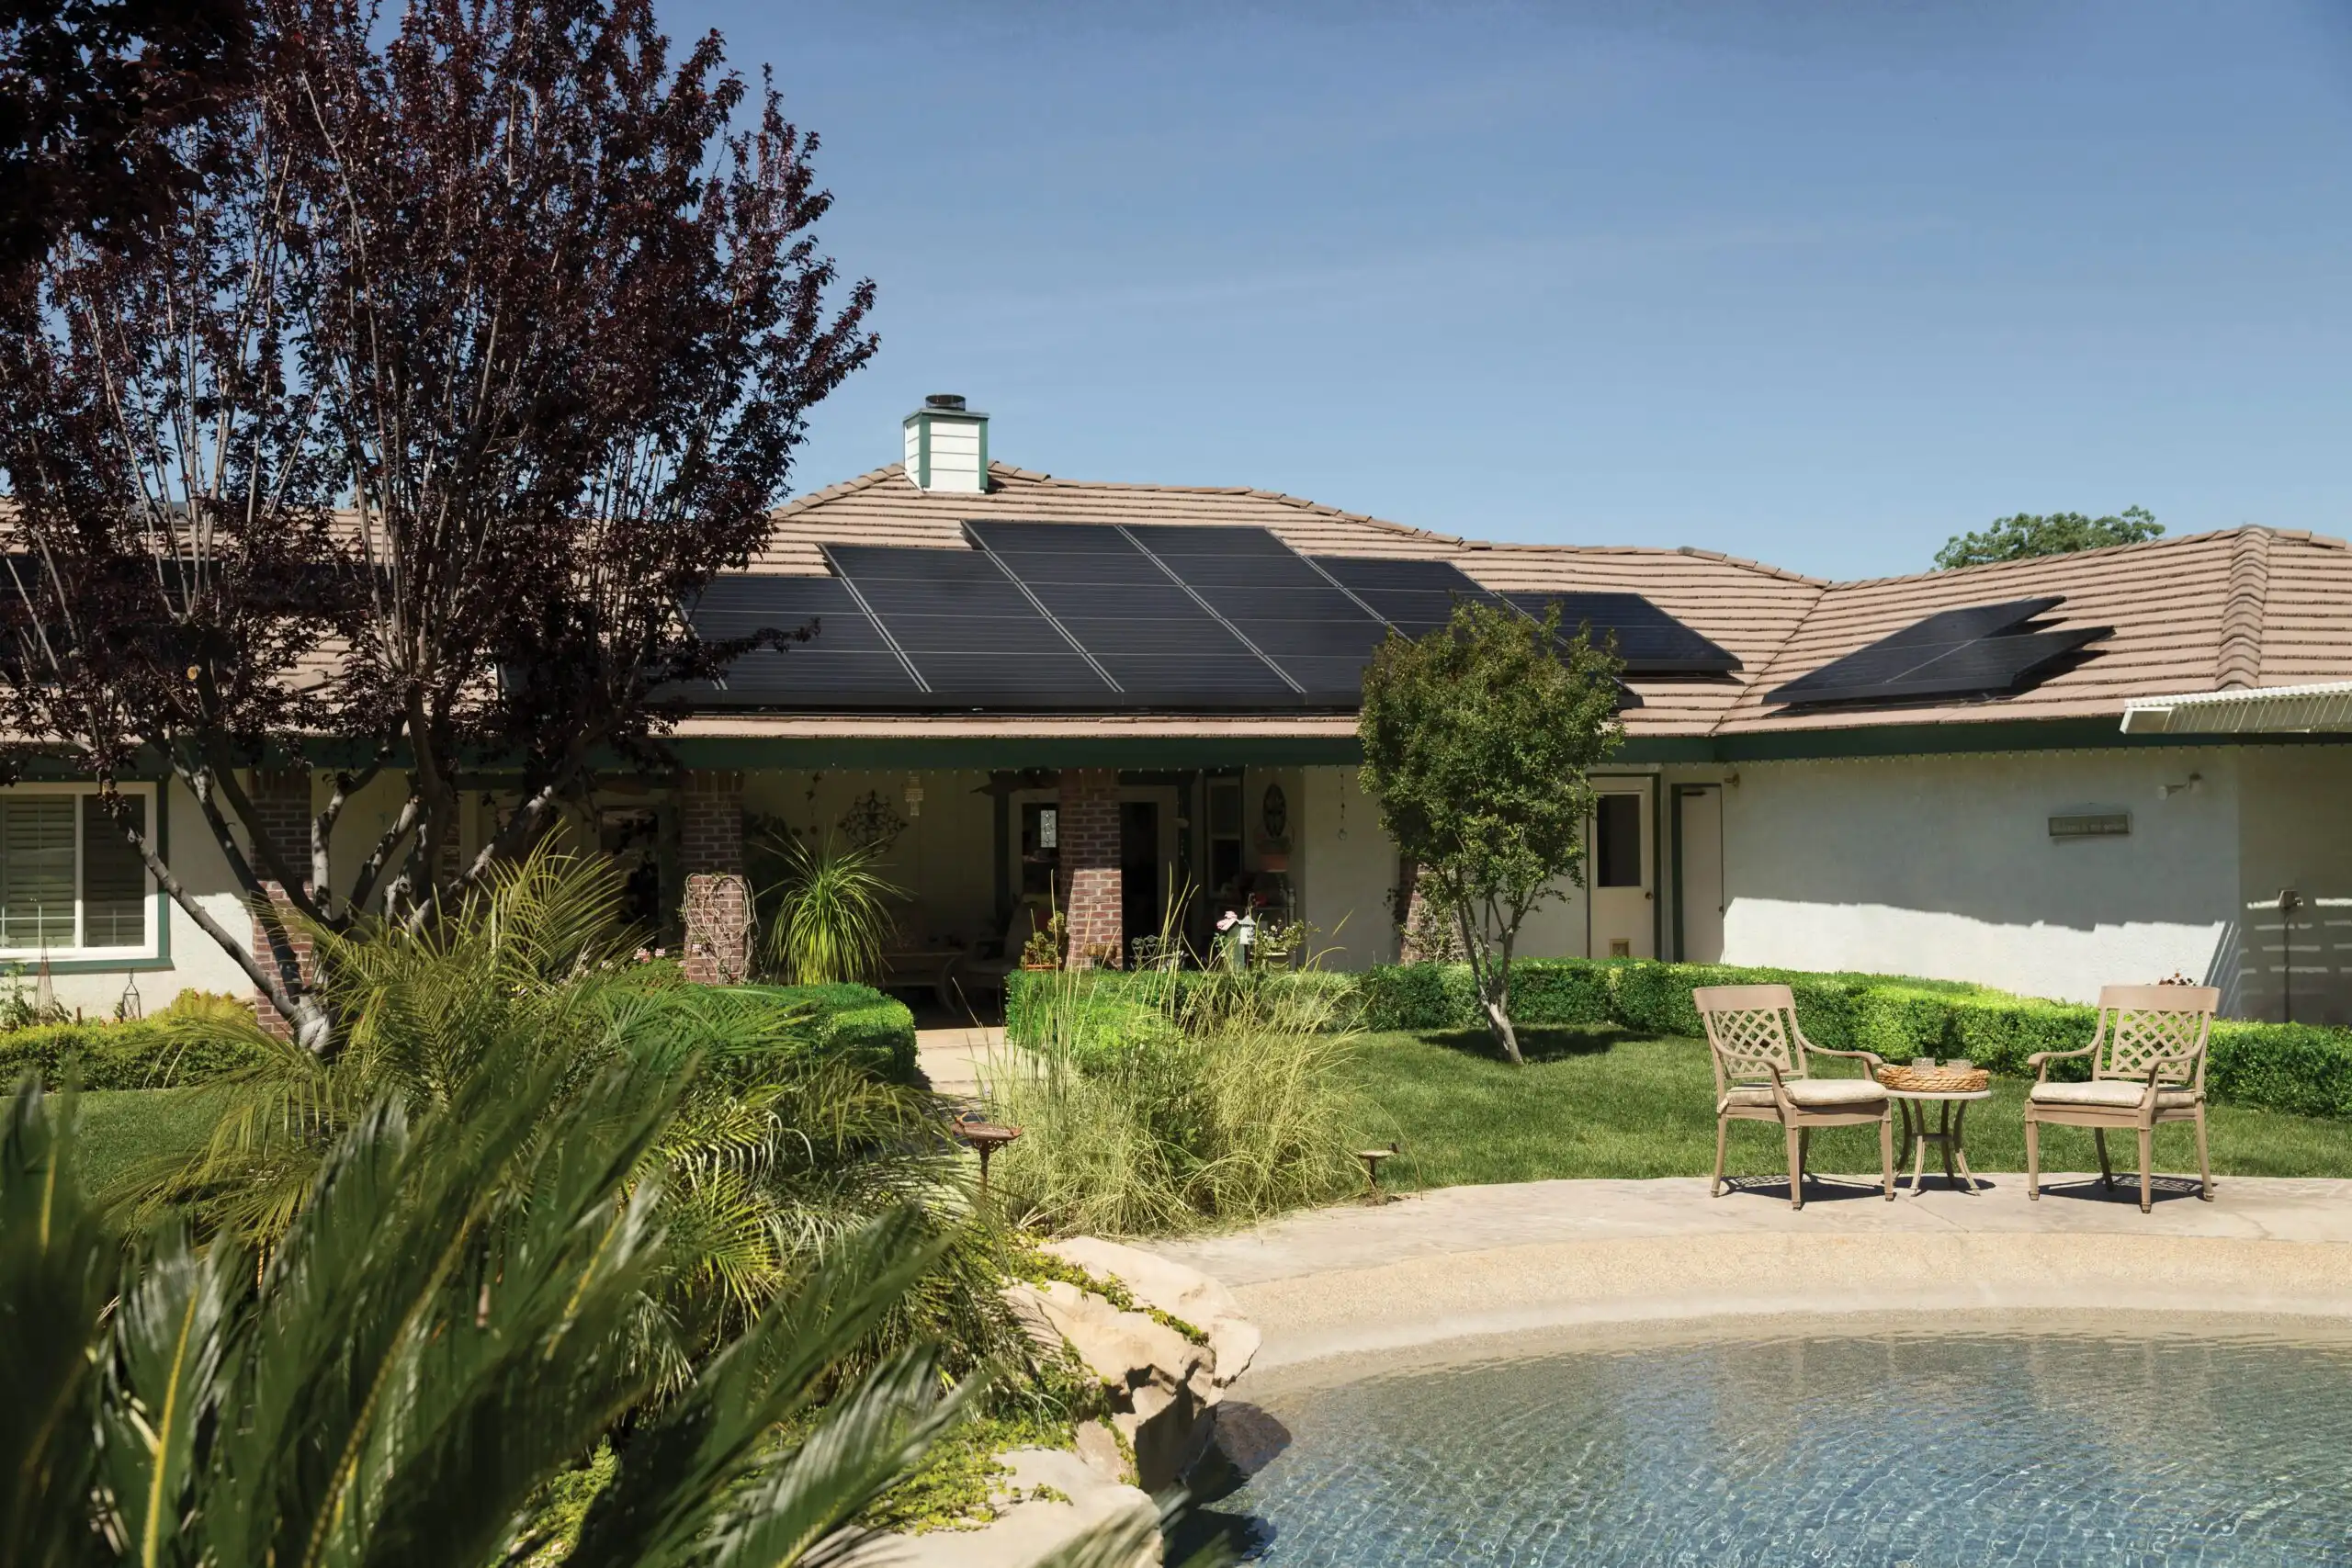 Blck solar panles roof image